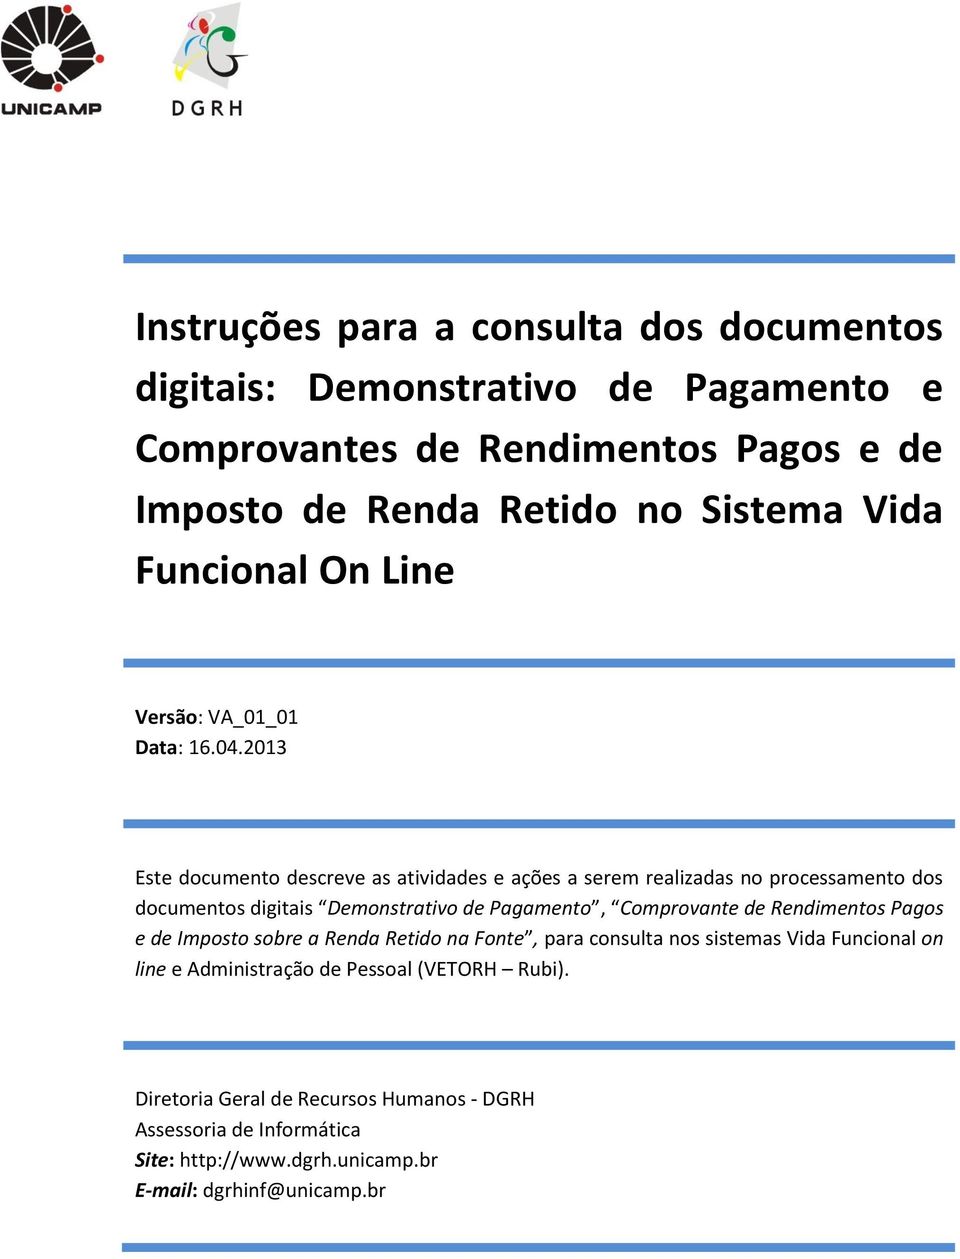 2013 Este documento descreve as atividades e ações a serem realizadas no processamento dos documentos digitais Demonstrativo de Pagamento, Comprovante de